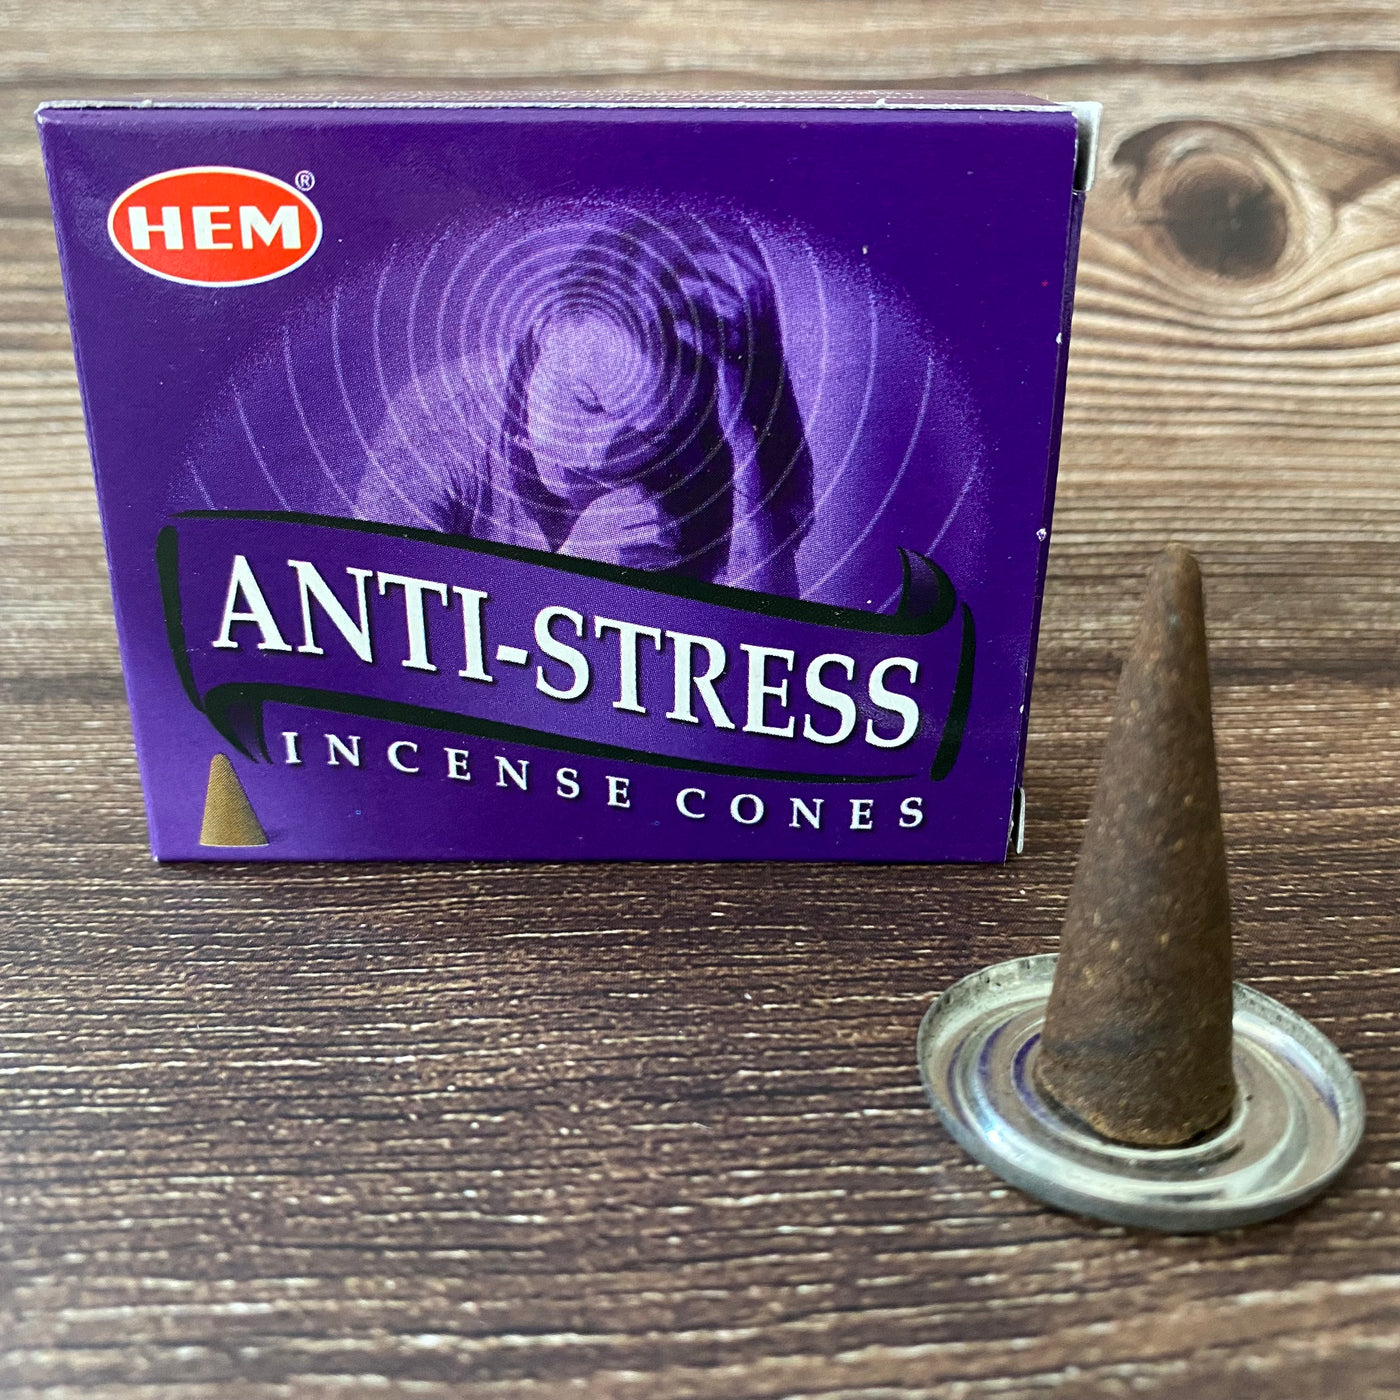 HEM - Anti-Stress Cone Incense (10 pack)